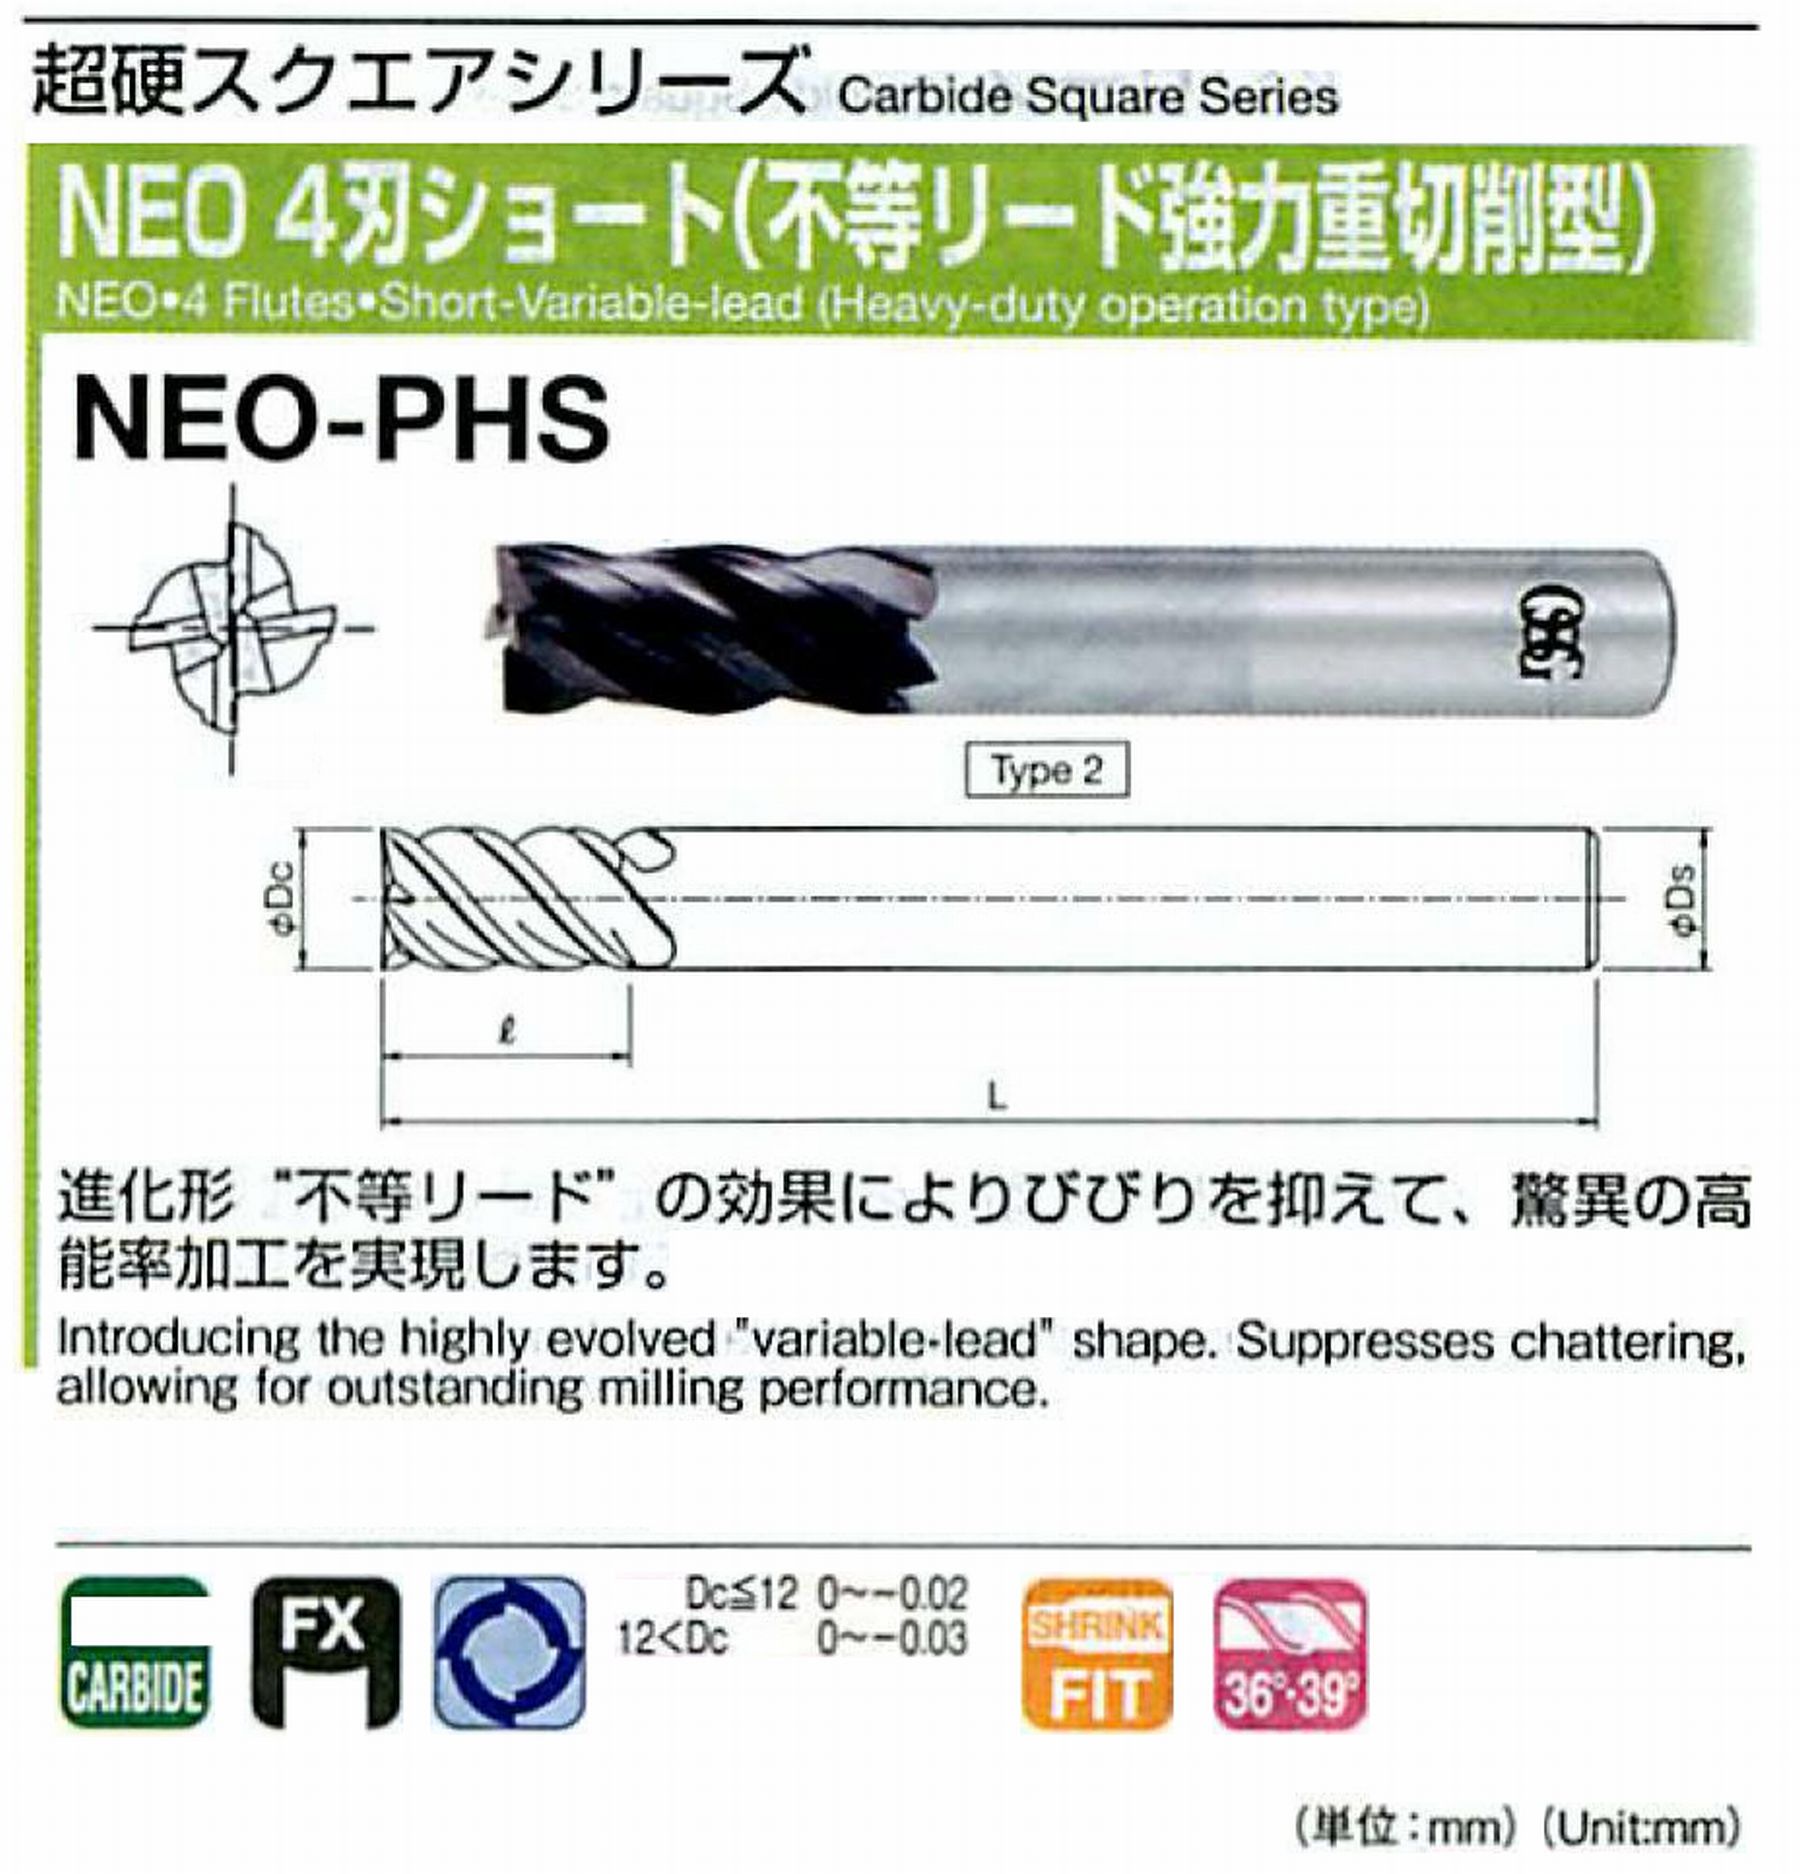 オーエスジー/OSG NEO 4刃ショート(不等リード強力重切削型) NEO-PHS 外径6 全長50 刃長12 シャンク径6mm 形状2